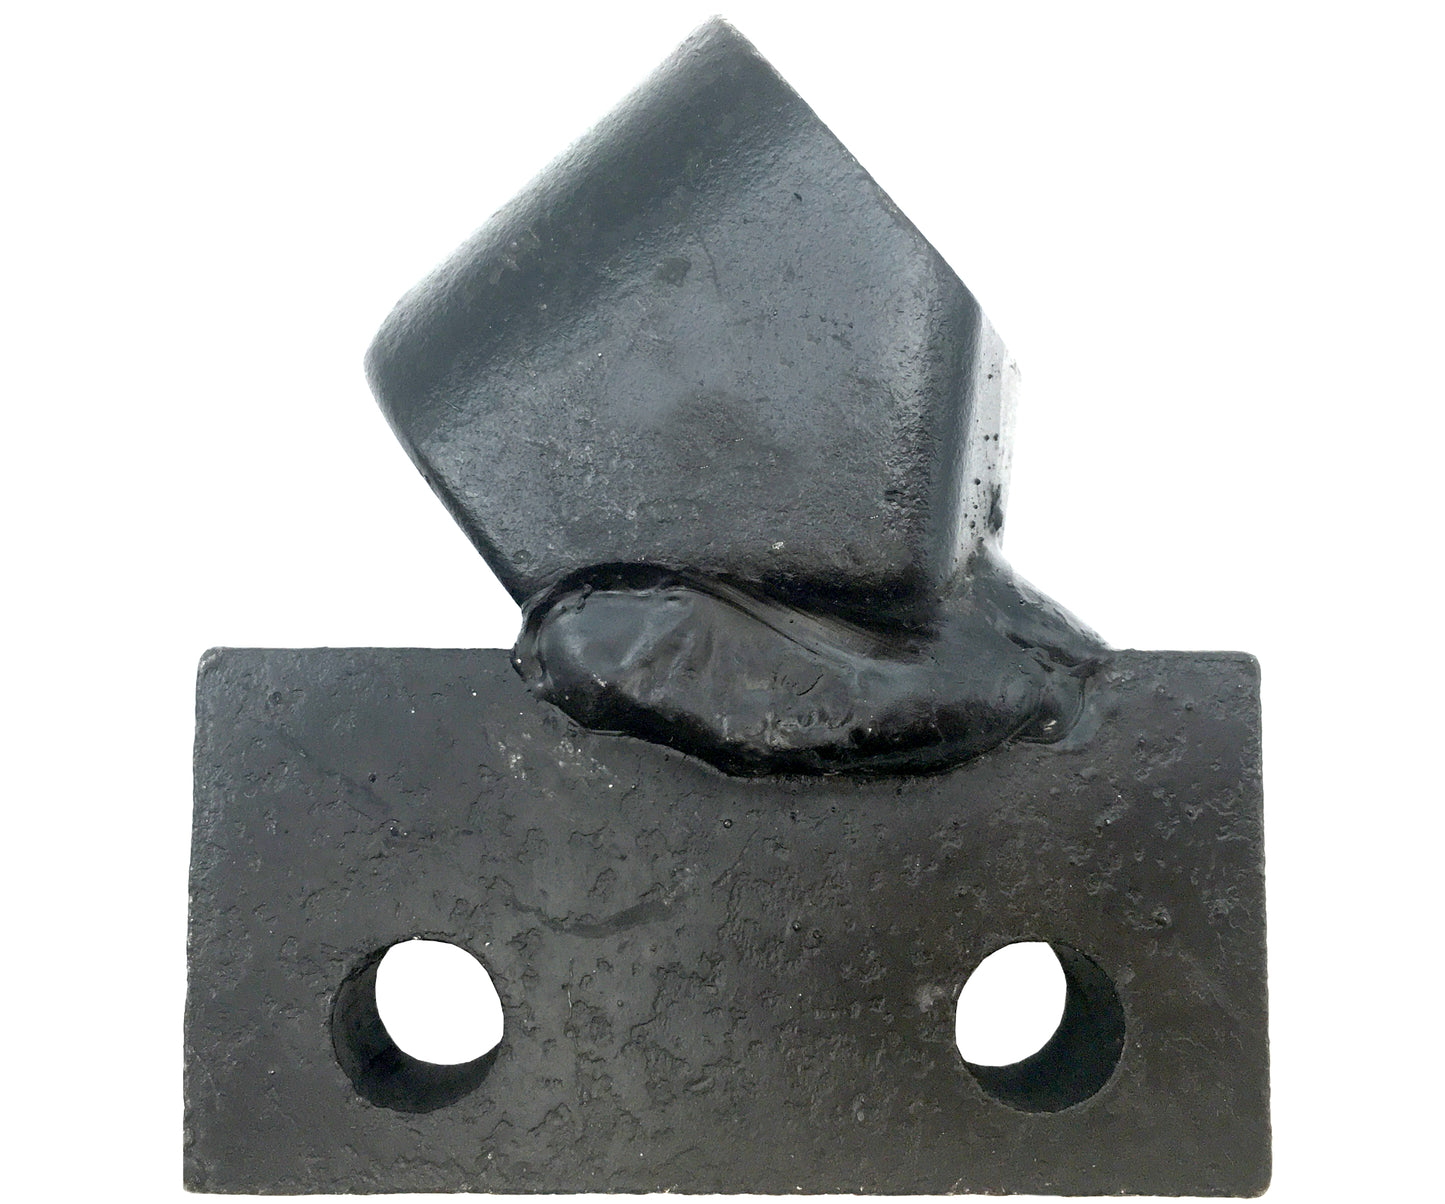 Adaptateurs de tranchée pour chaîne de roche LH &amp; RH – 136036 et 136037 – Pas de 2", coupe de 4", 19 mm